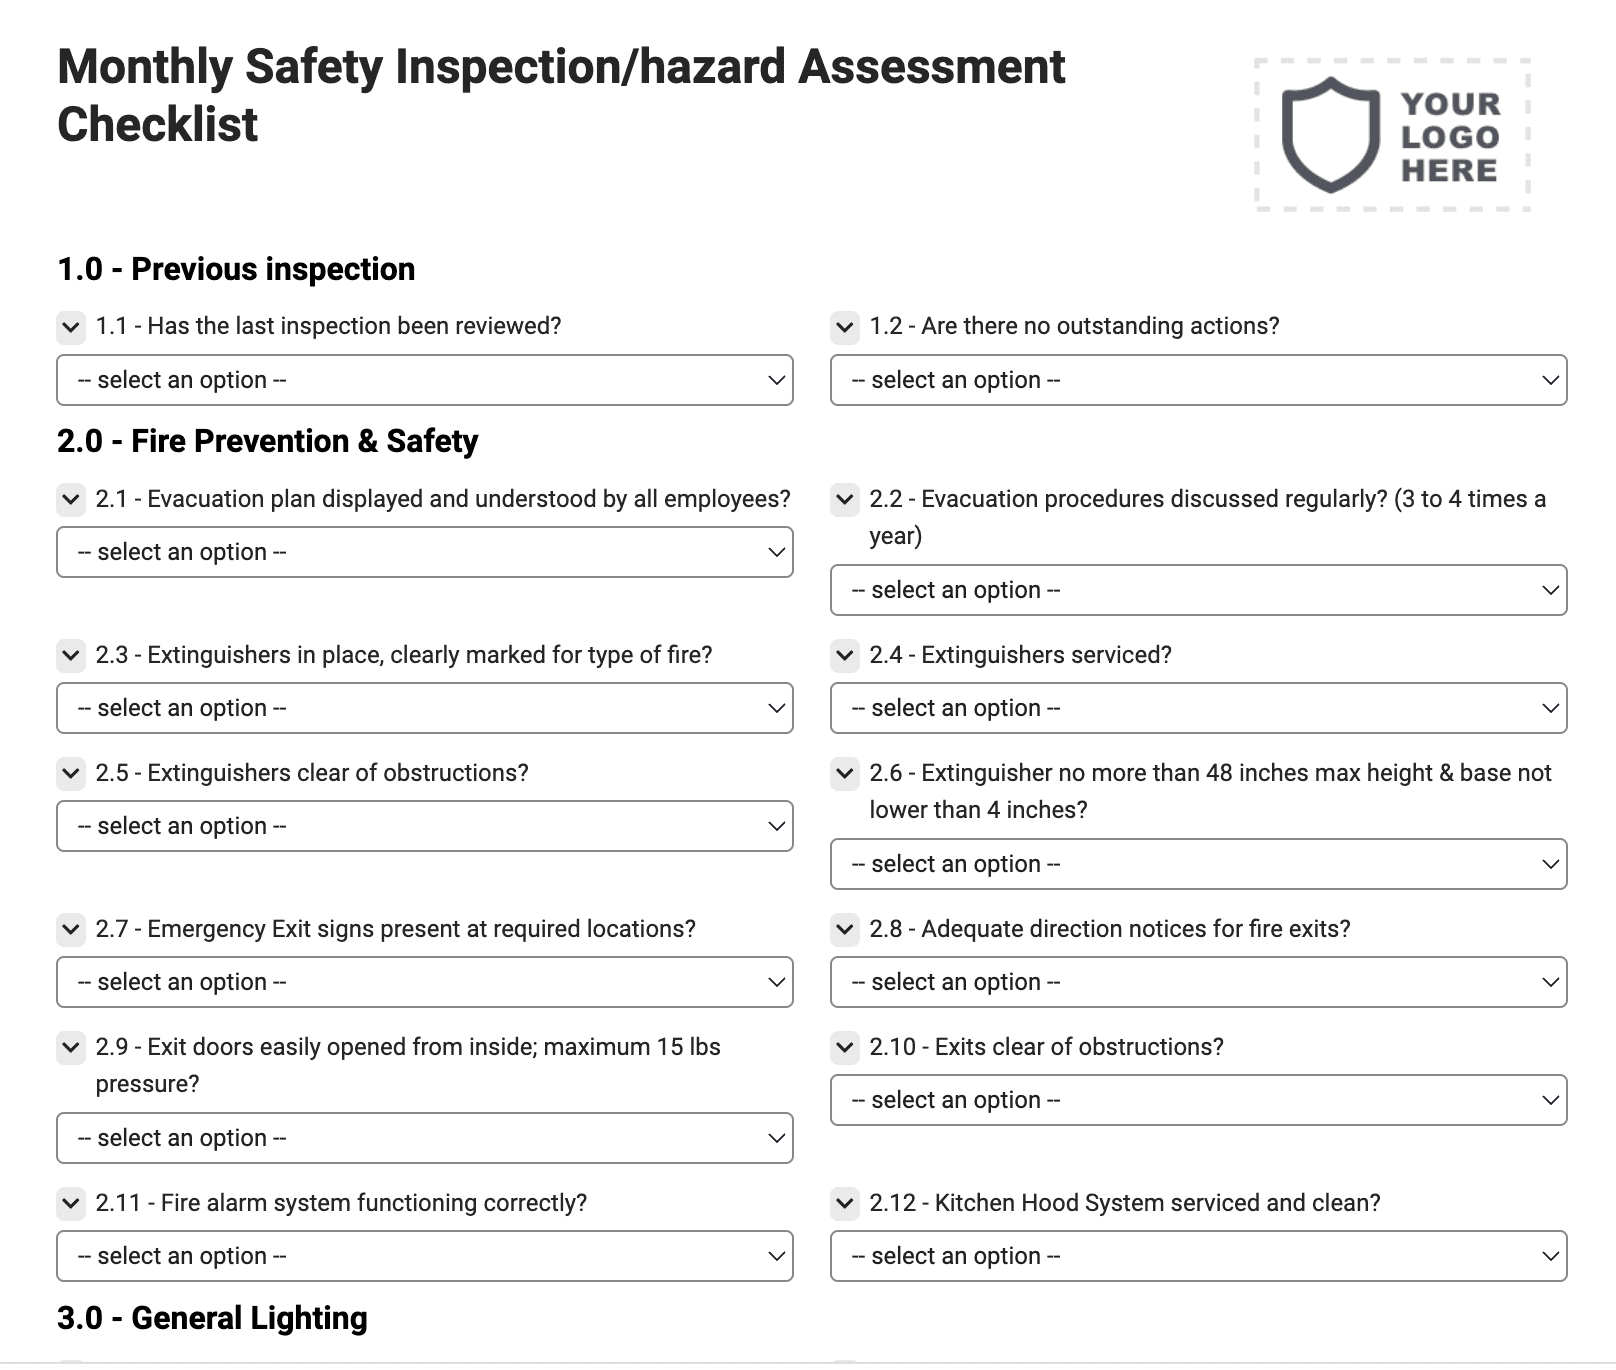 Monthly Safety Inspection/hazard Assessment Checklist